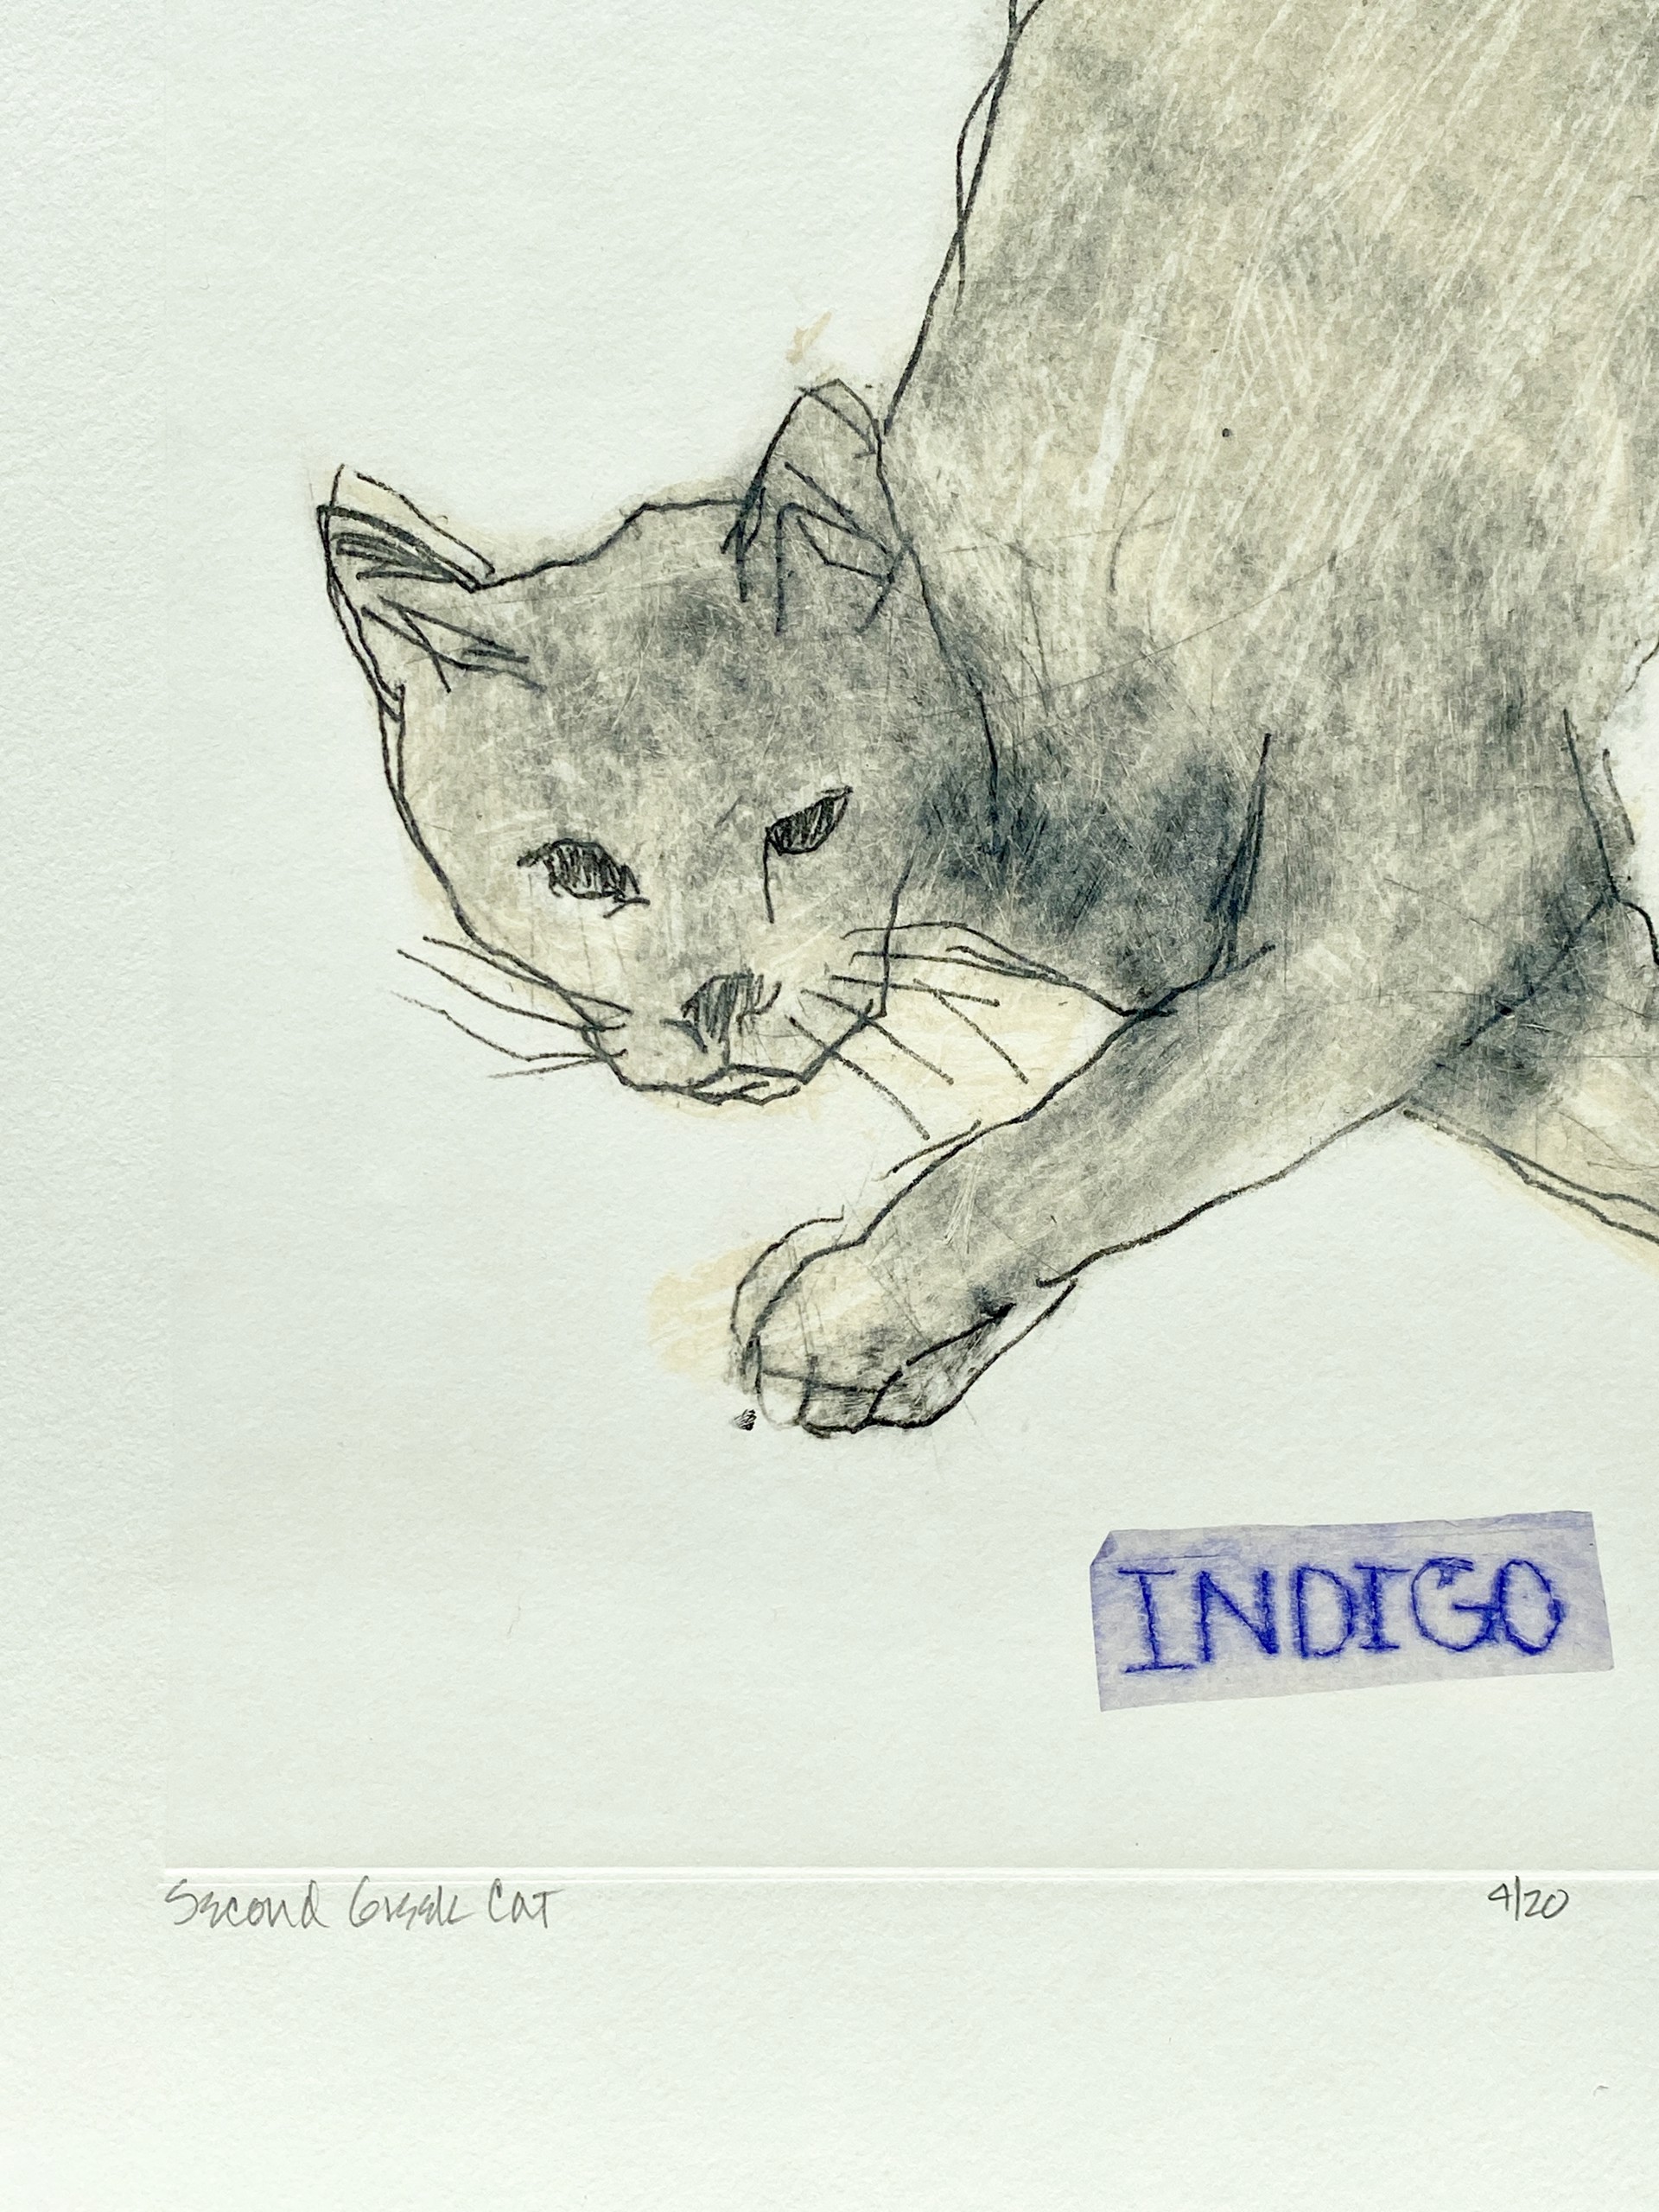 Second Greek Cat (Indigo) by Paula Schuette Kraemer